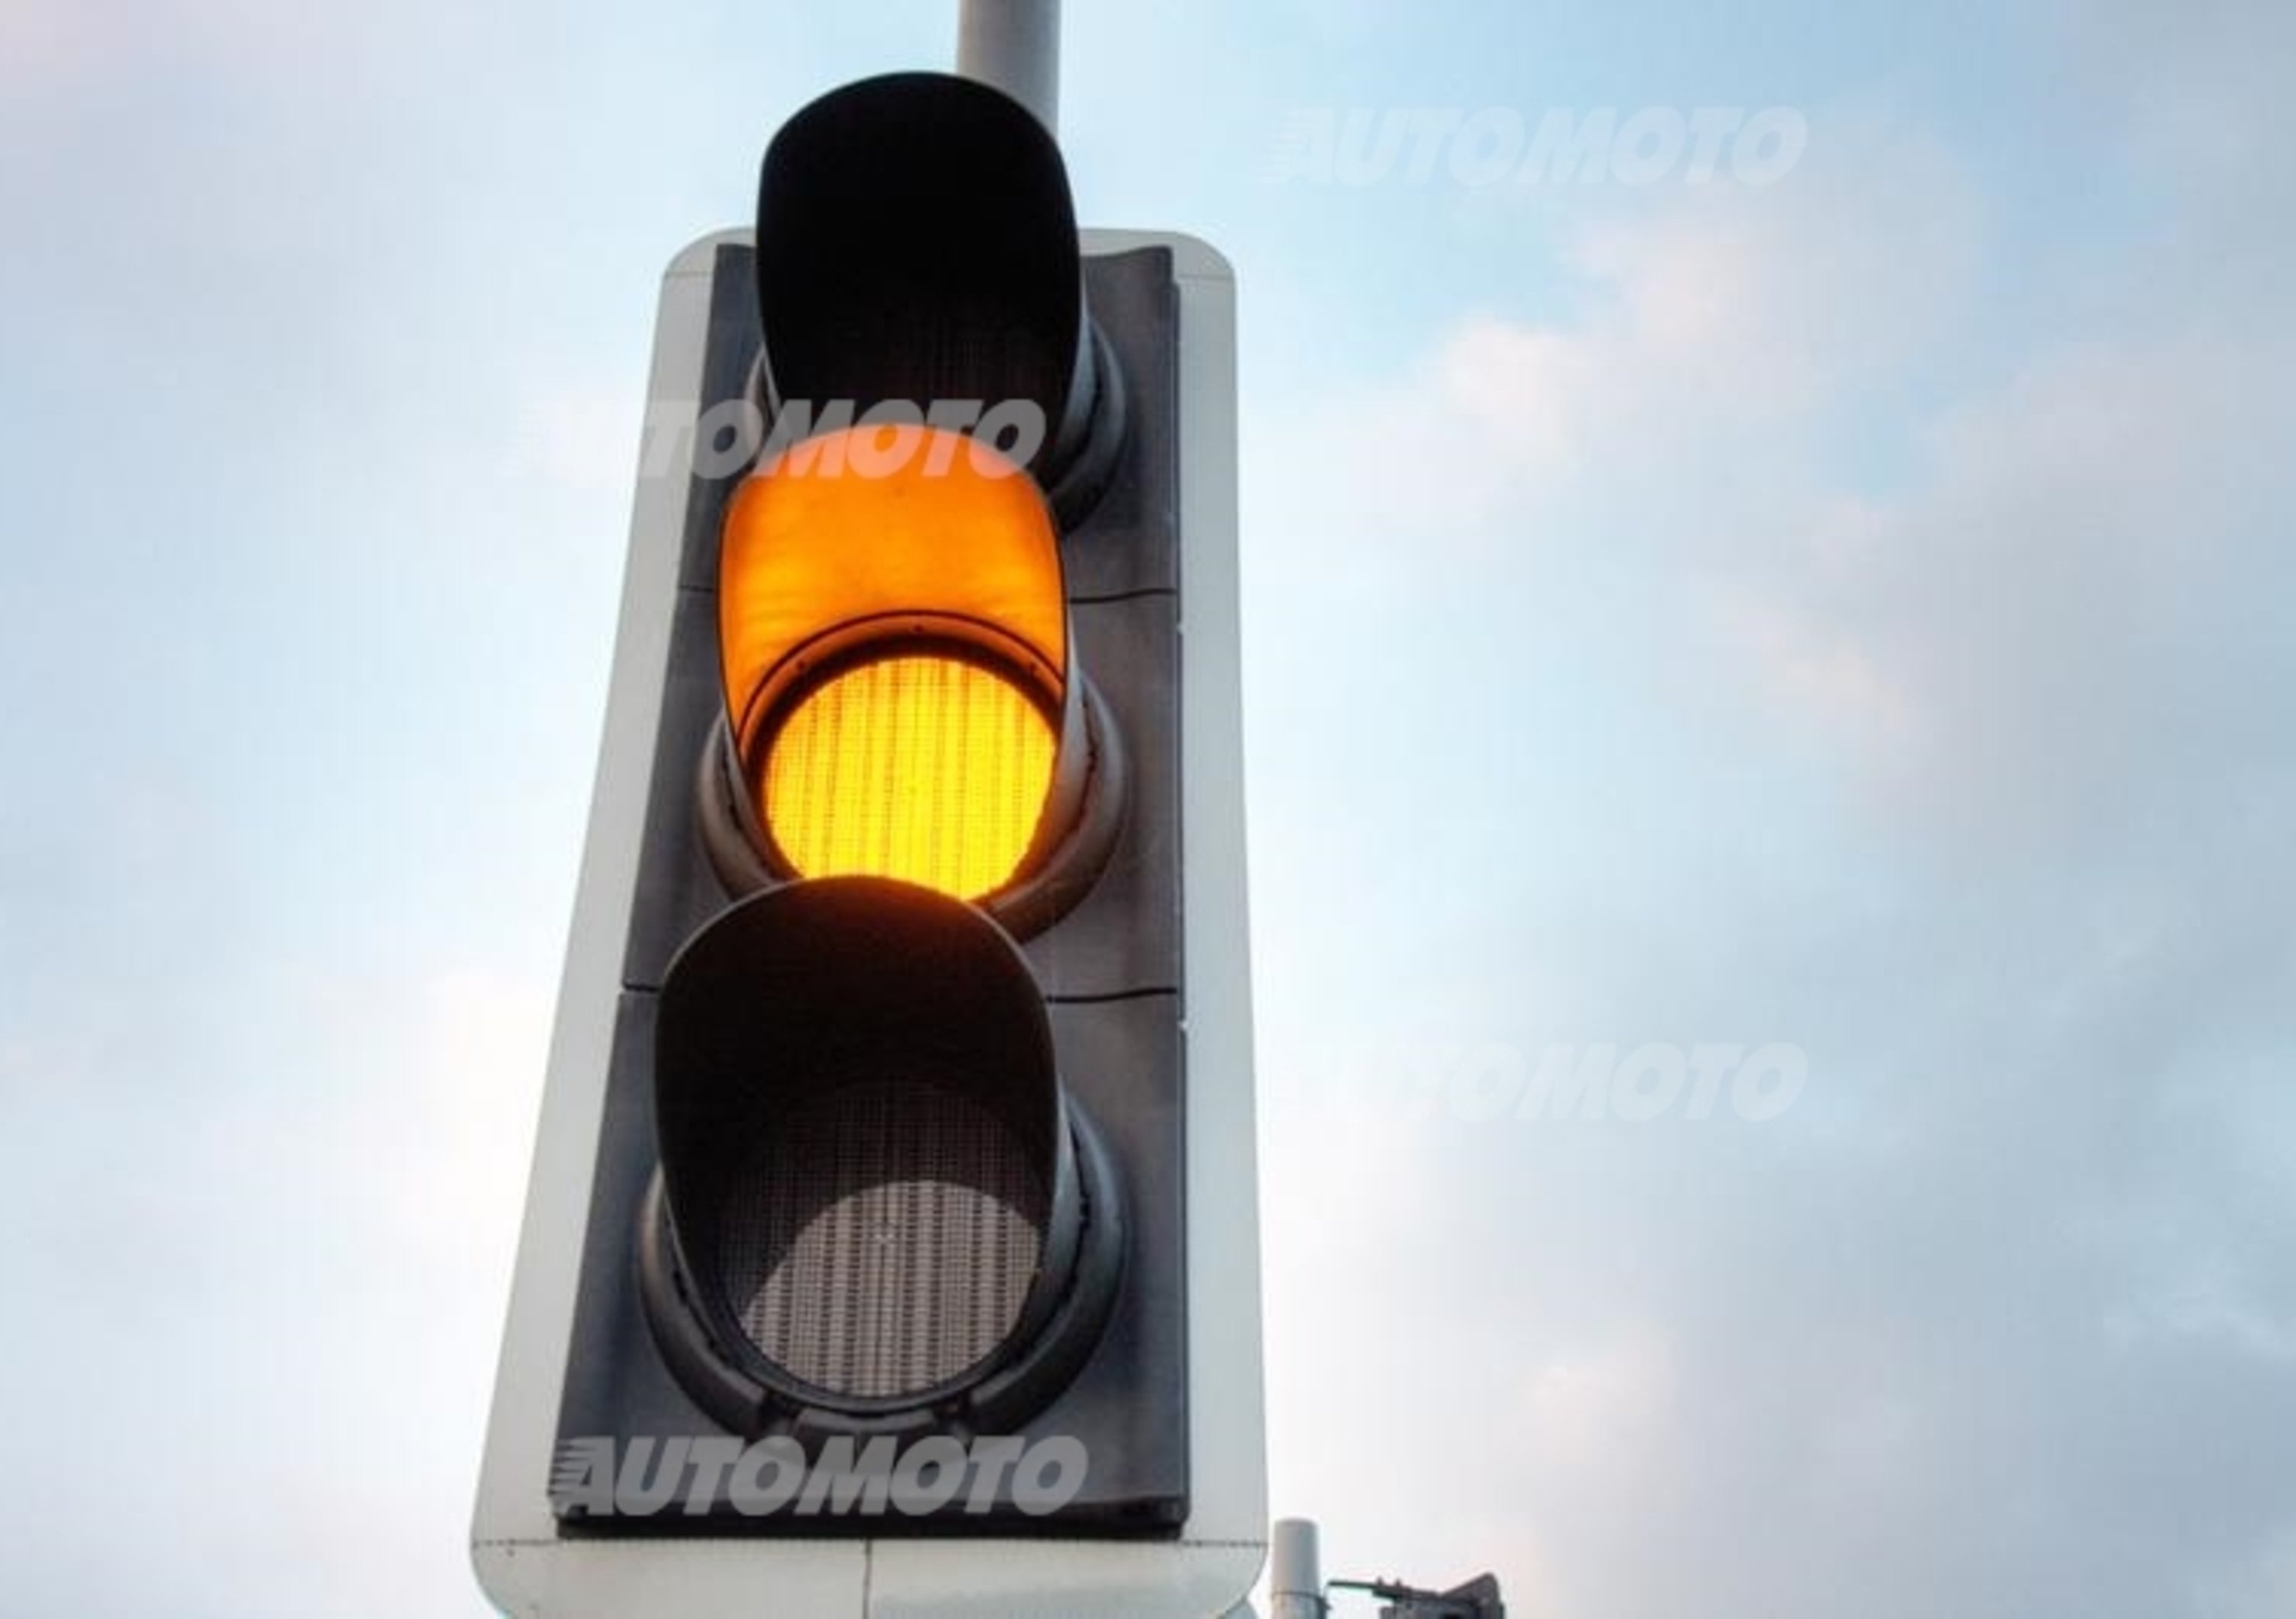 Durata del giallo al semaforo: mai inferiore a 3 secondi. La sentenza